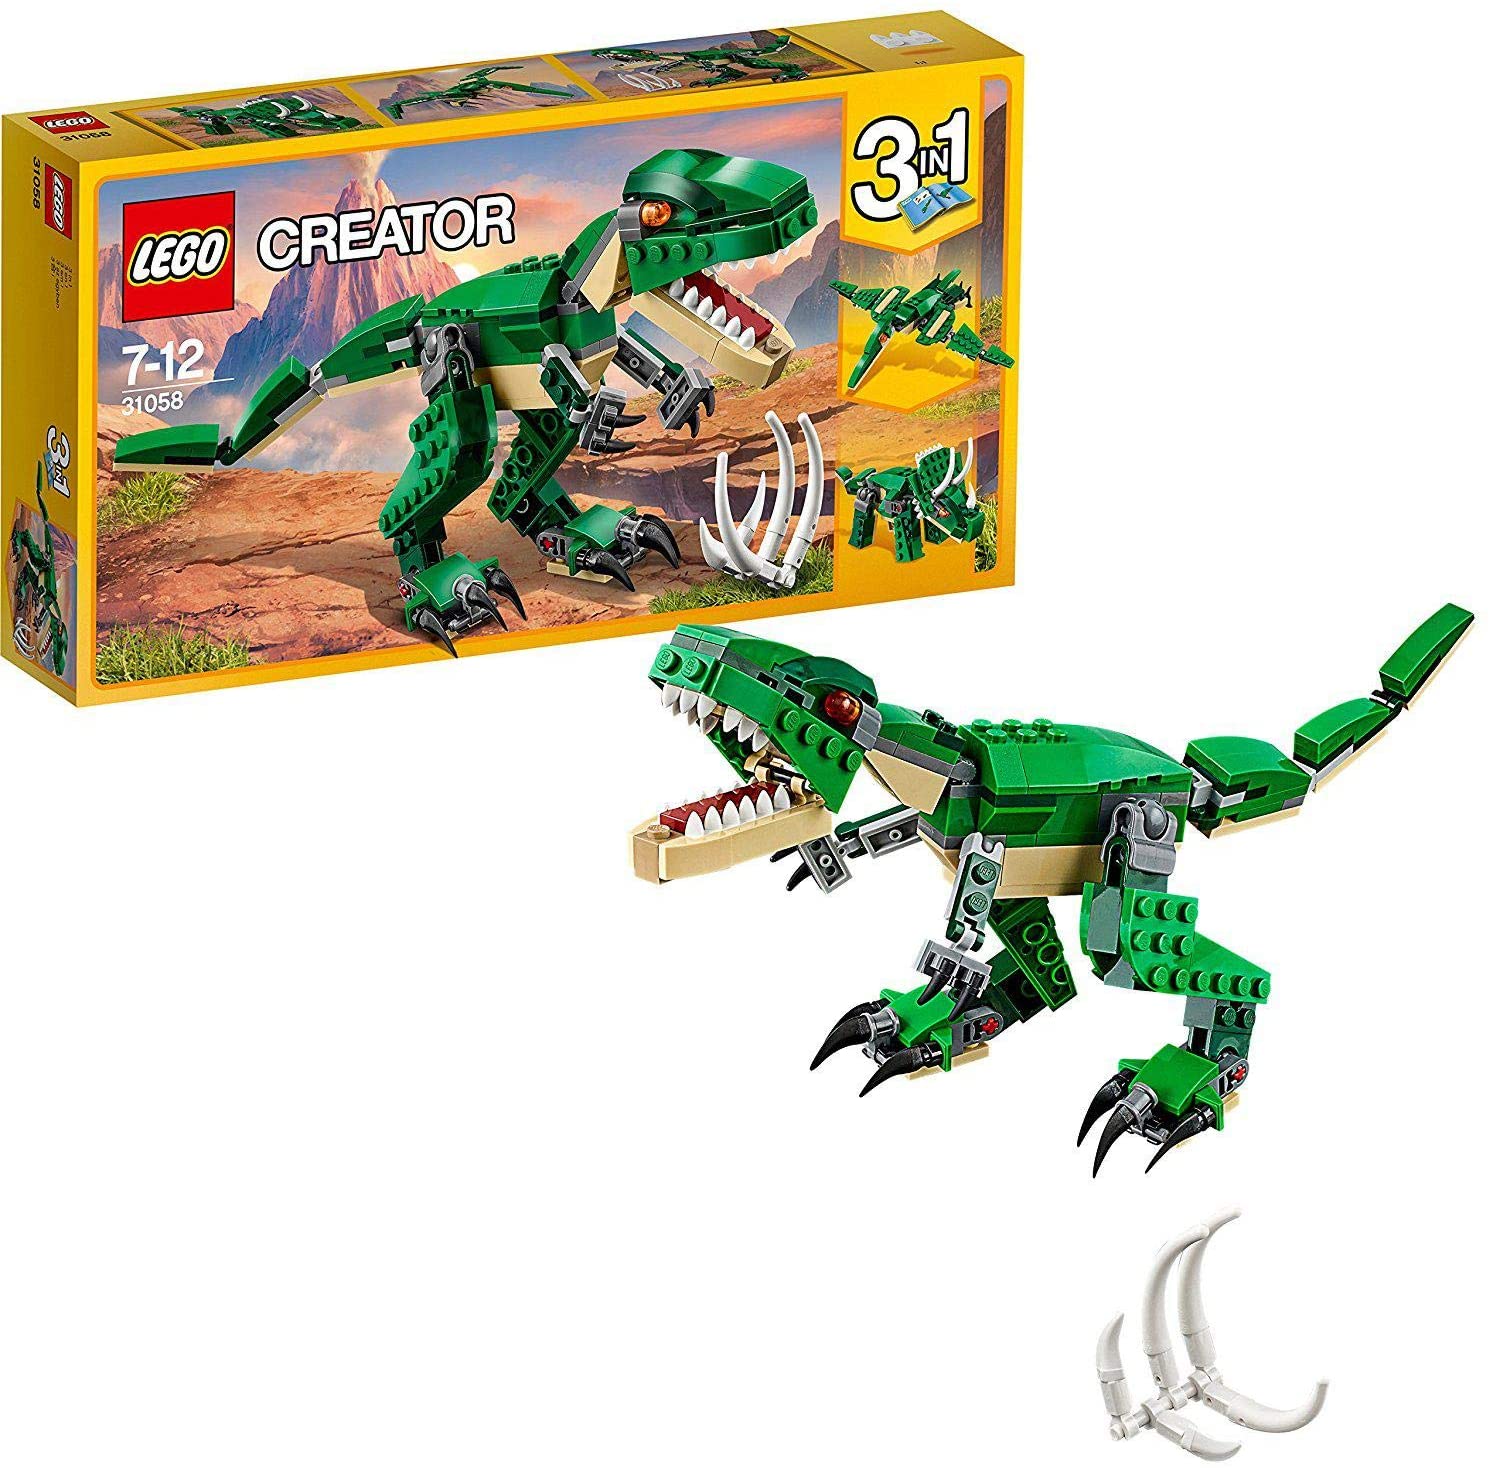 LEGO- Creator Tirannosauro 3 in 1 Set di Costruzioni per Creare Tre Diversi Dinosauri per Bambini 7-12 Anni, 31058